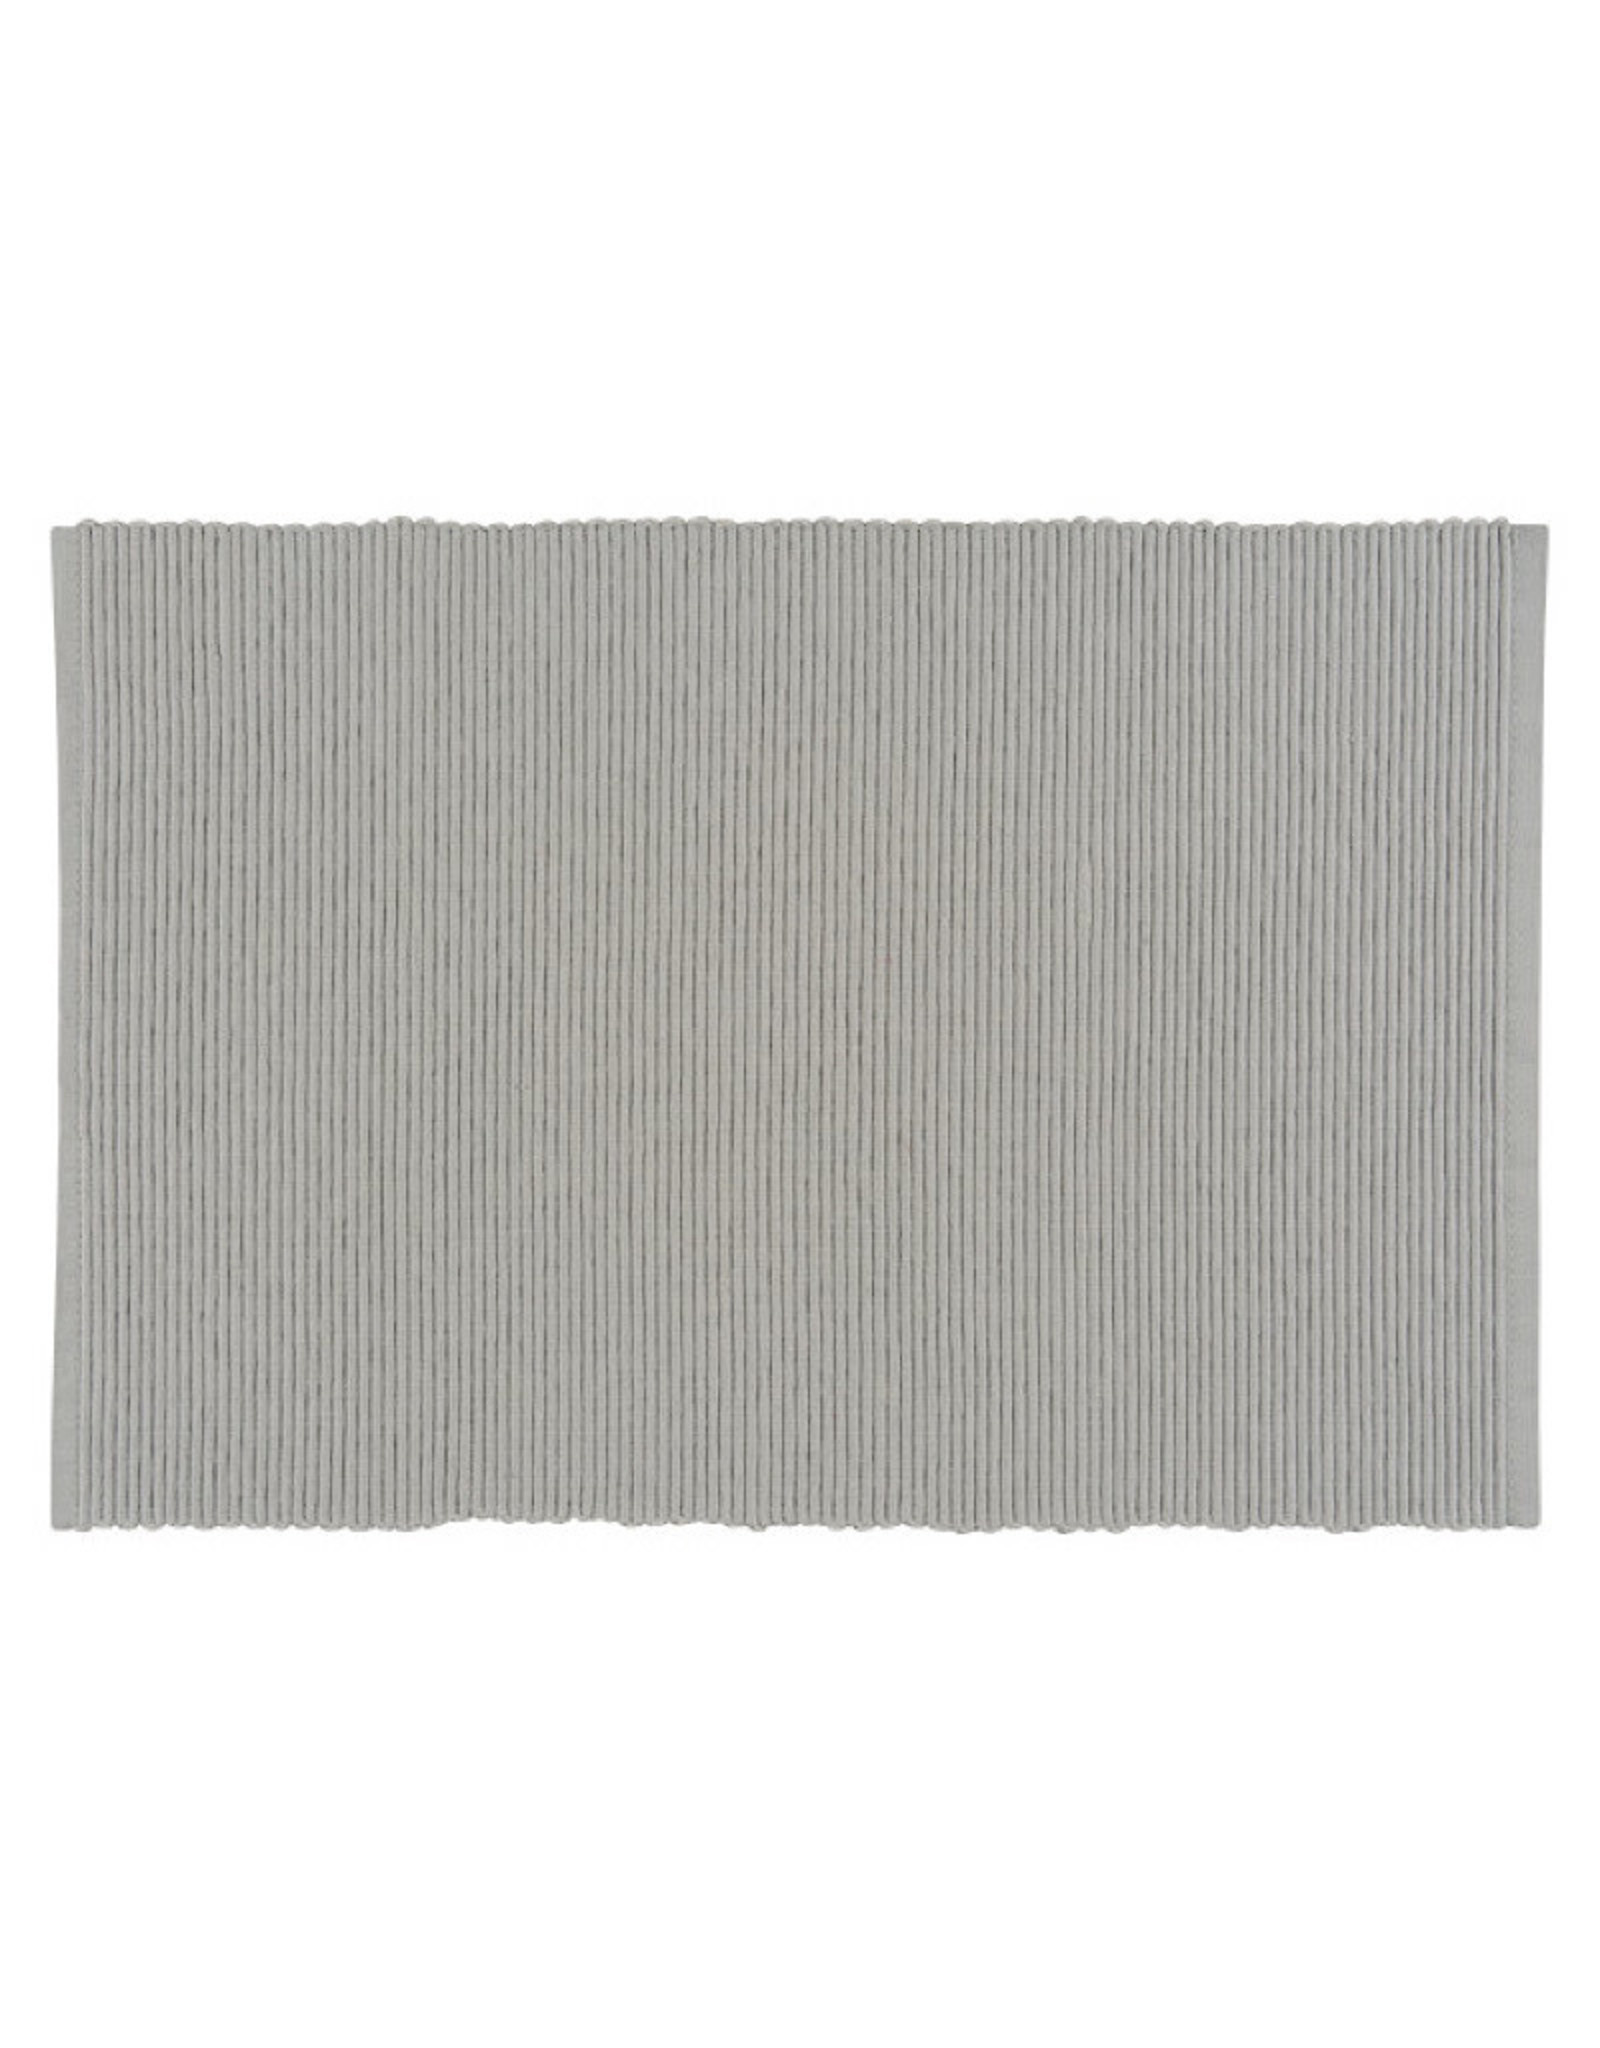 Placemat spectrum cobblestone 13"x19" 100% Cotton